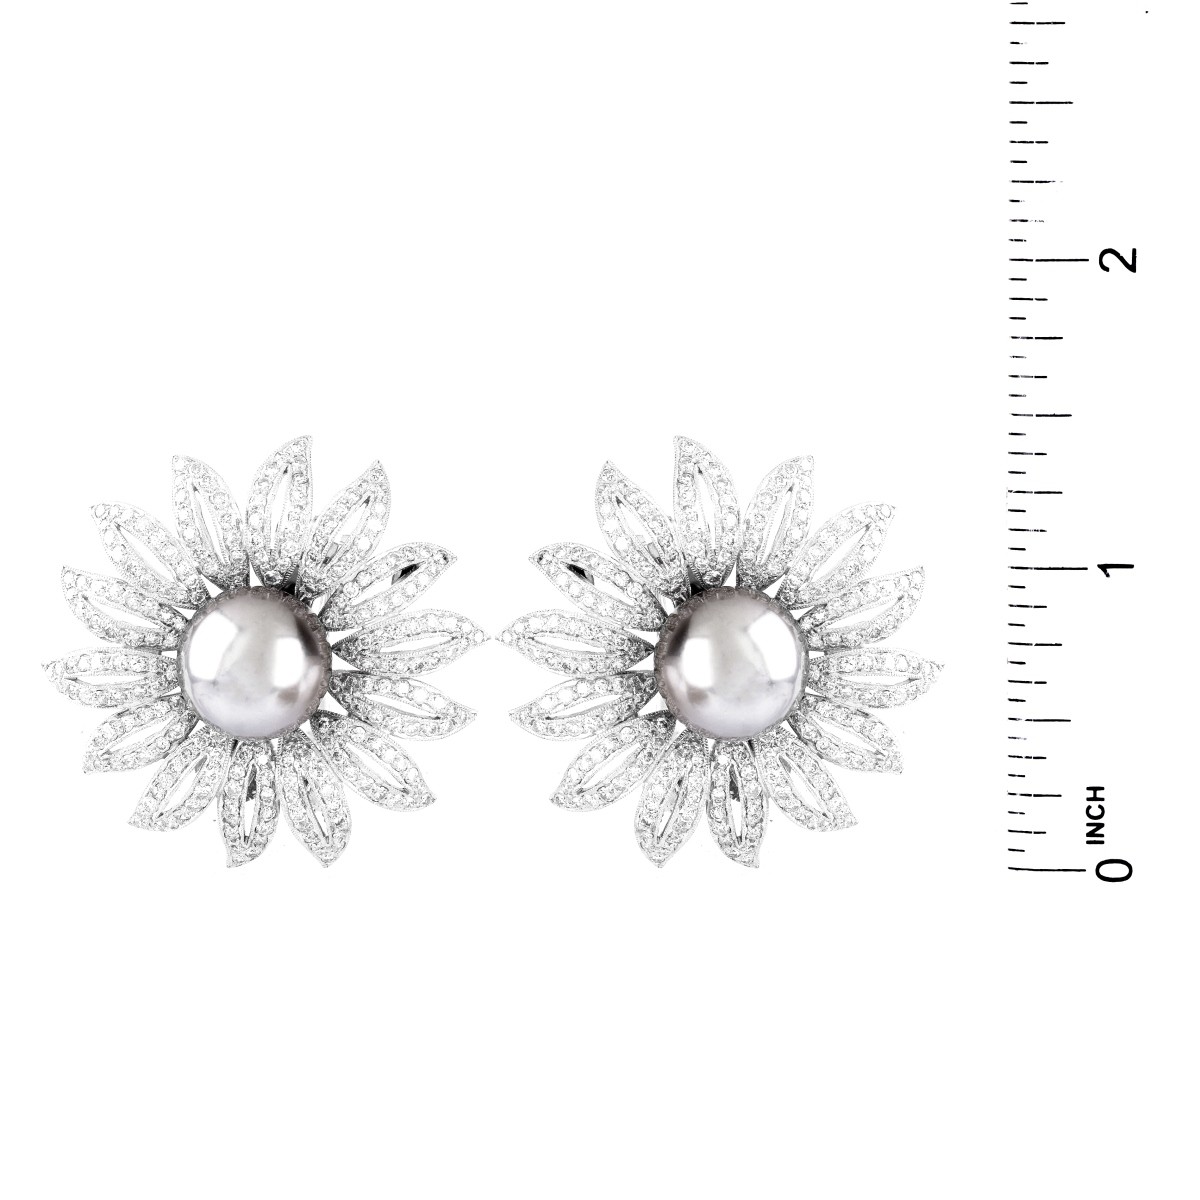 12.0mm Pearl, Diamond and 18K Earrings